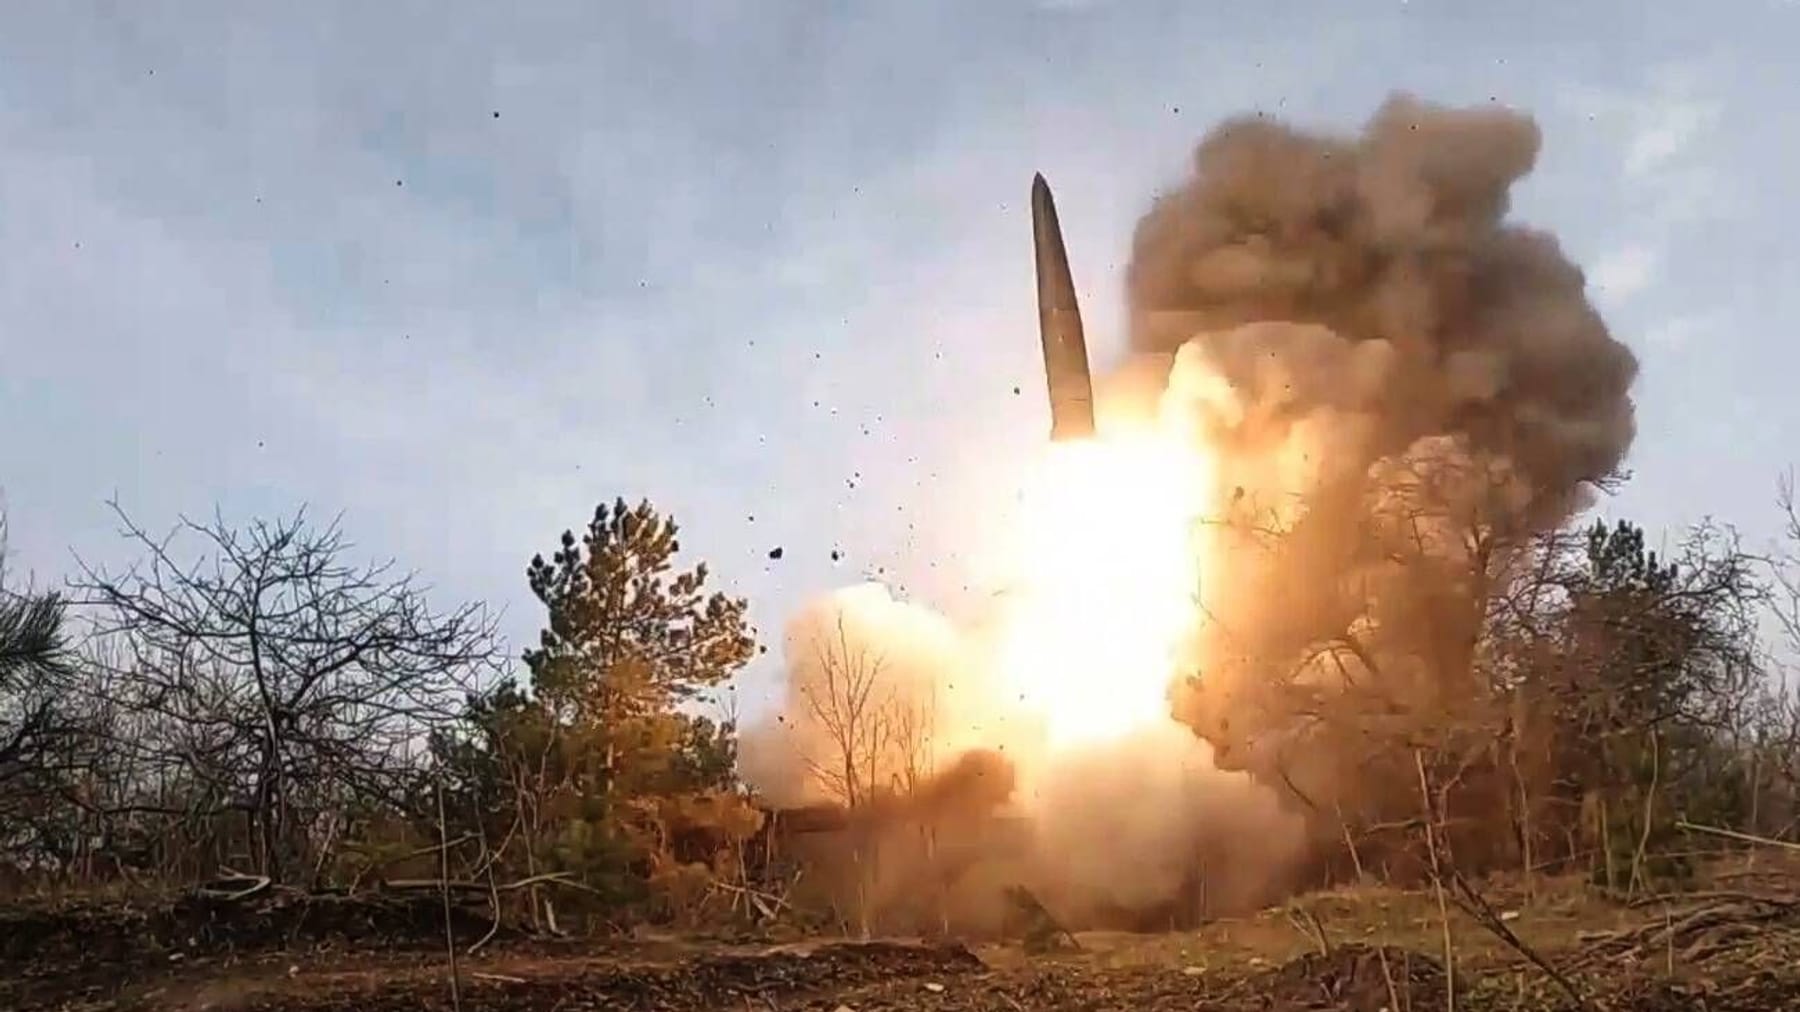 ukraiński blog informacyjny |  Kijów: Rosyjskie pociski zawierają niemieckie komponenty